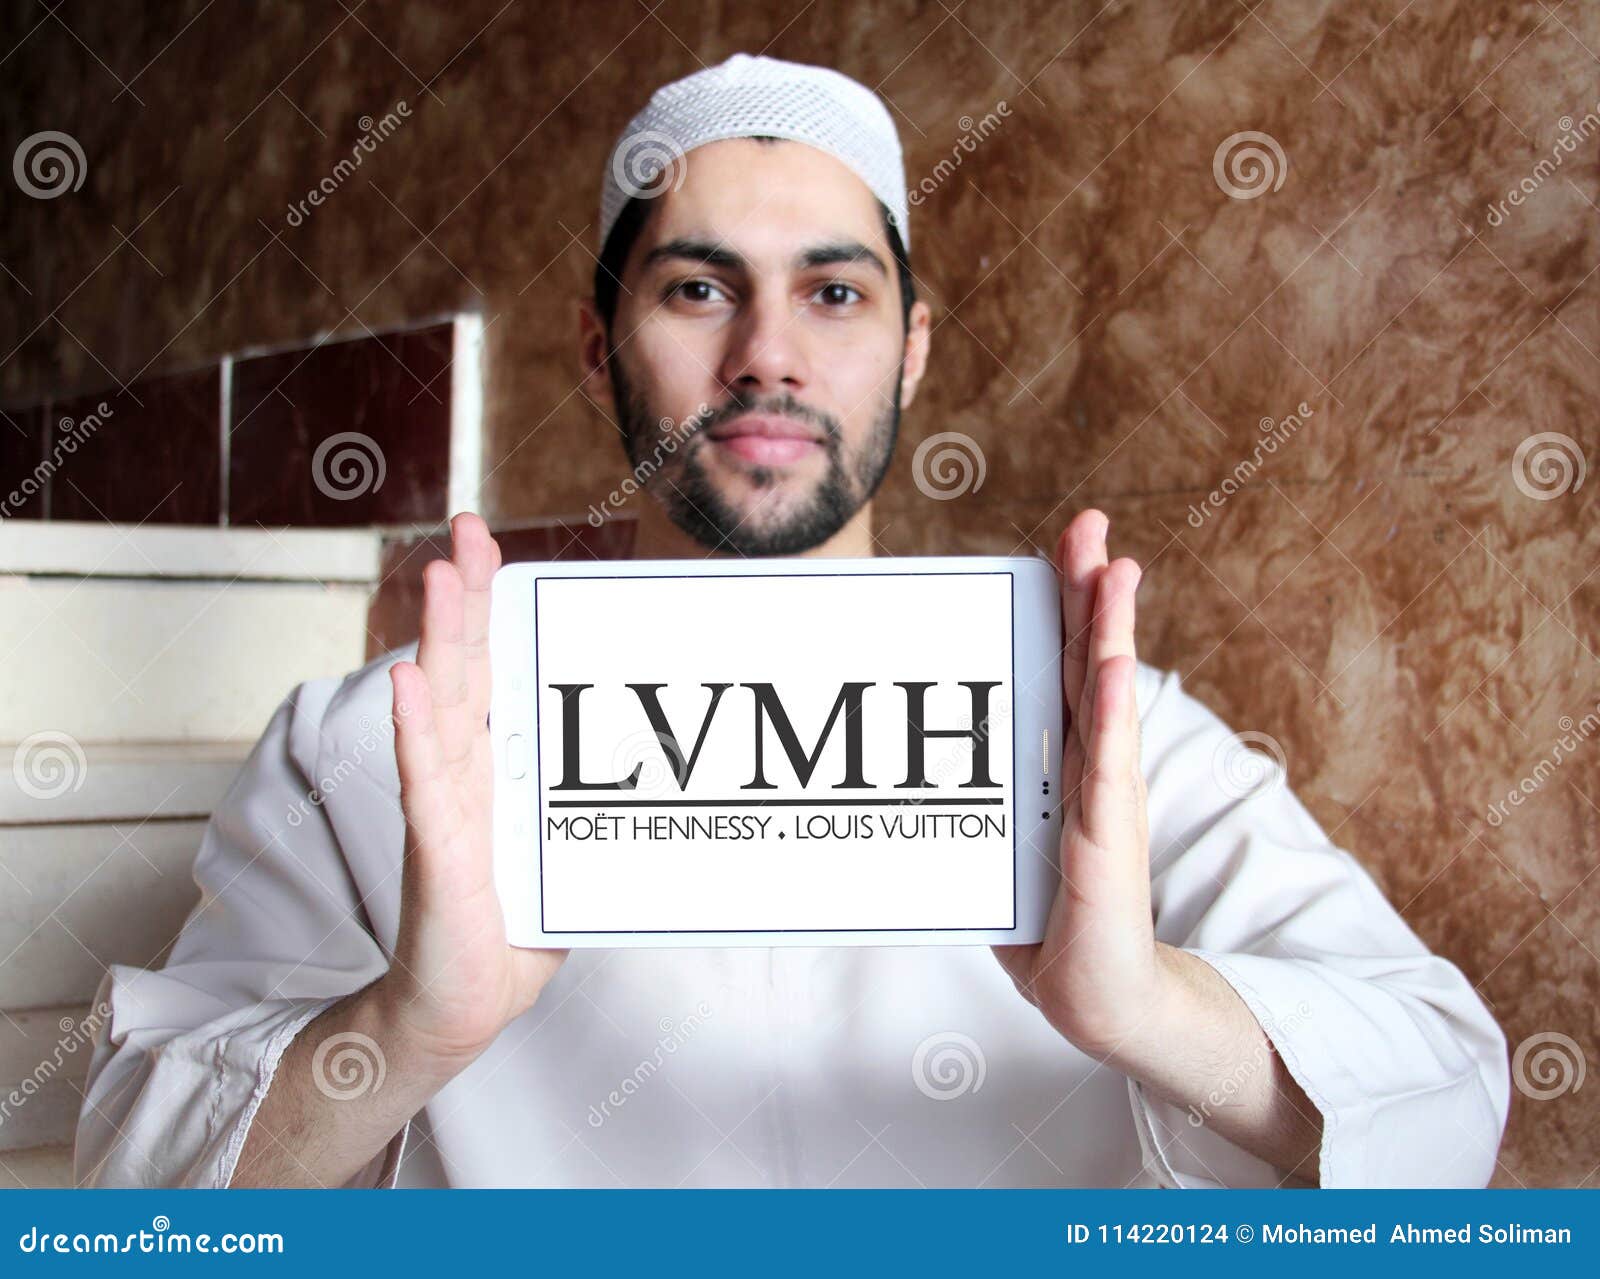 lvmh stock certificate